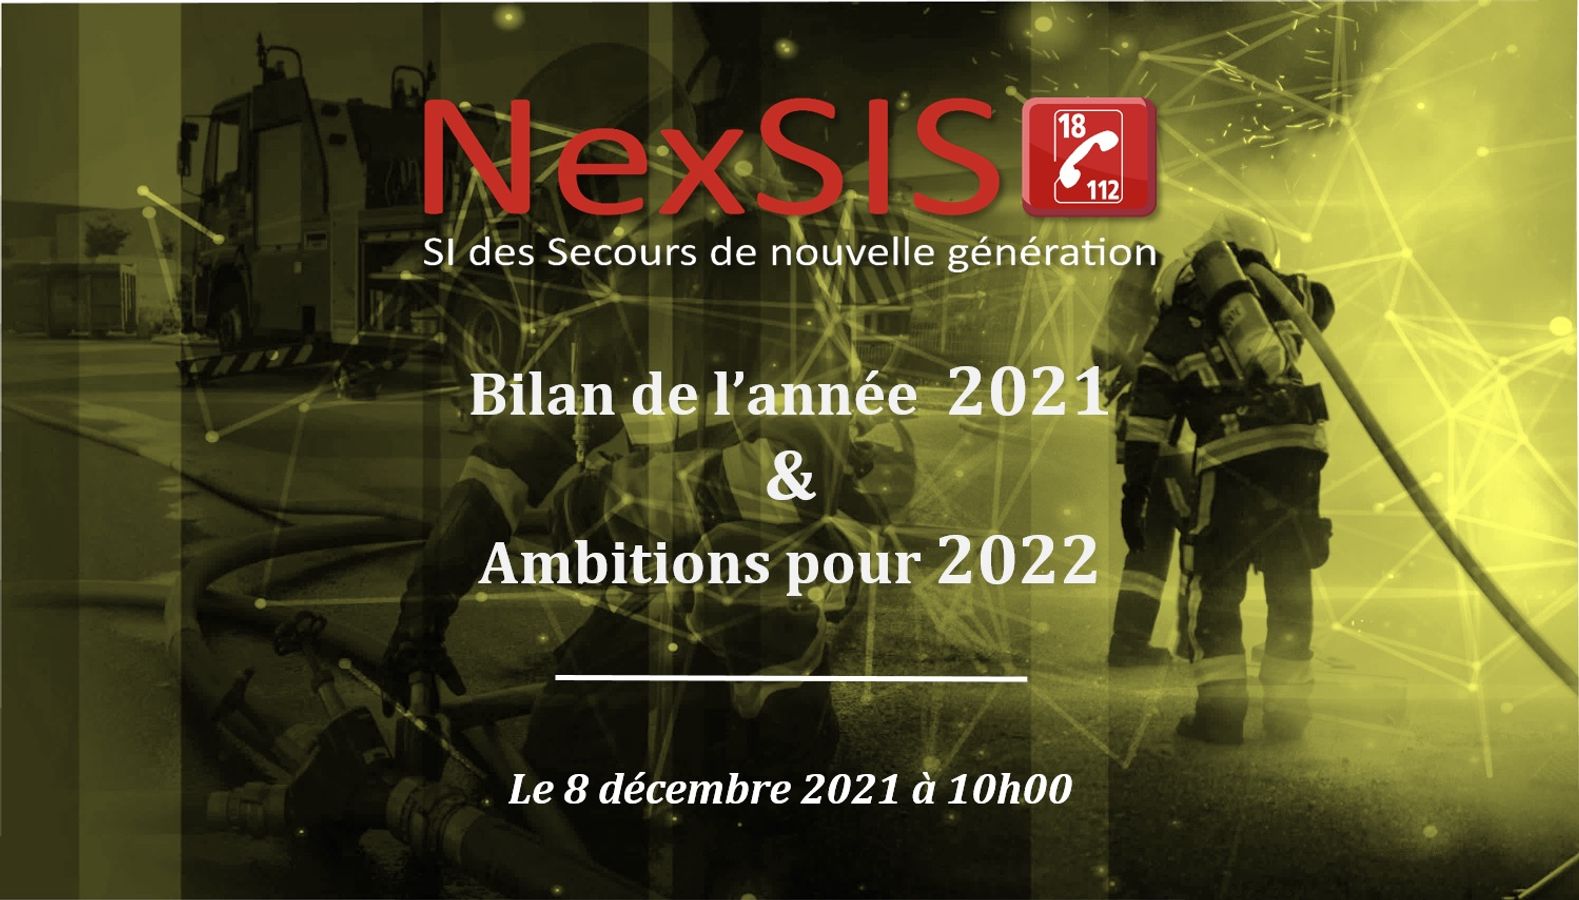 Point d’information sur NexSIS 18-112 : bilan de l’année 2021 et ambitions pour 2022